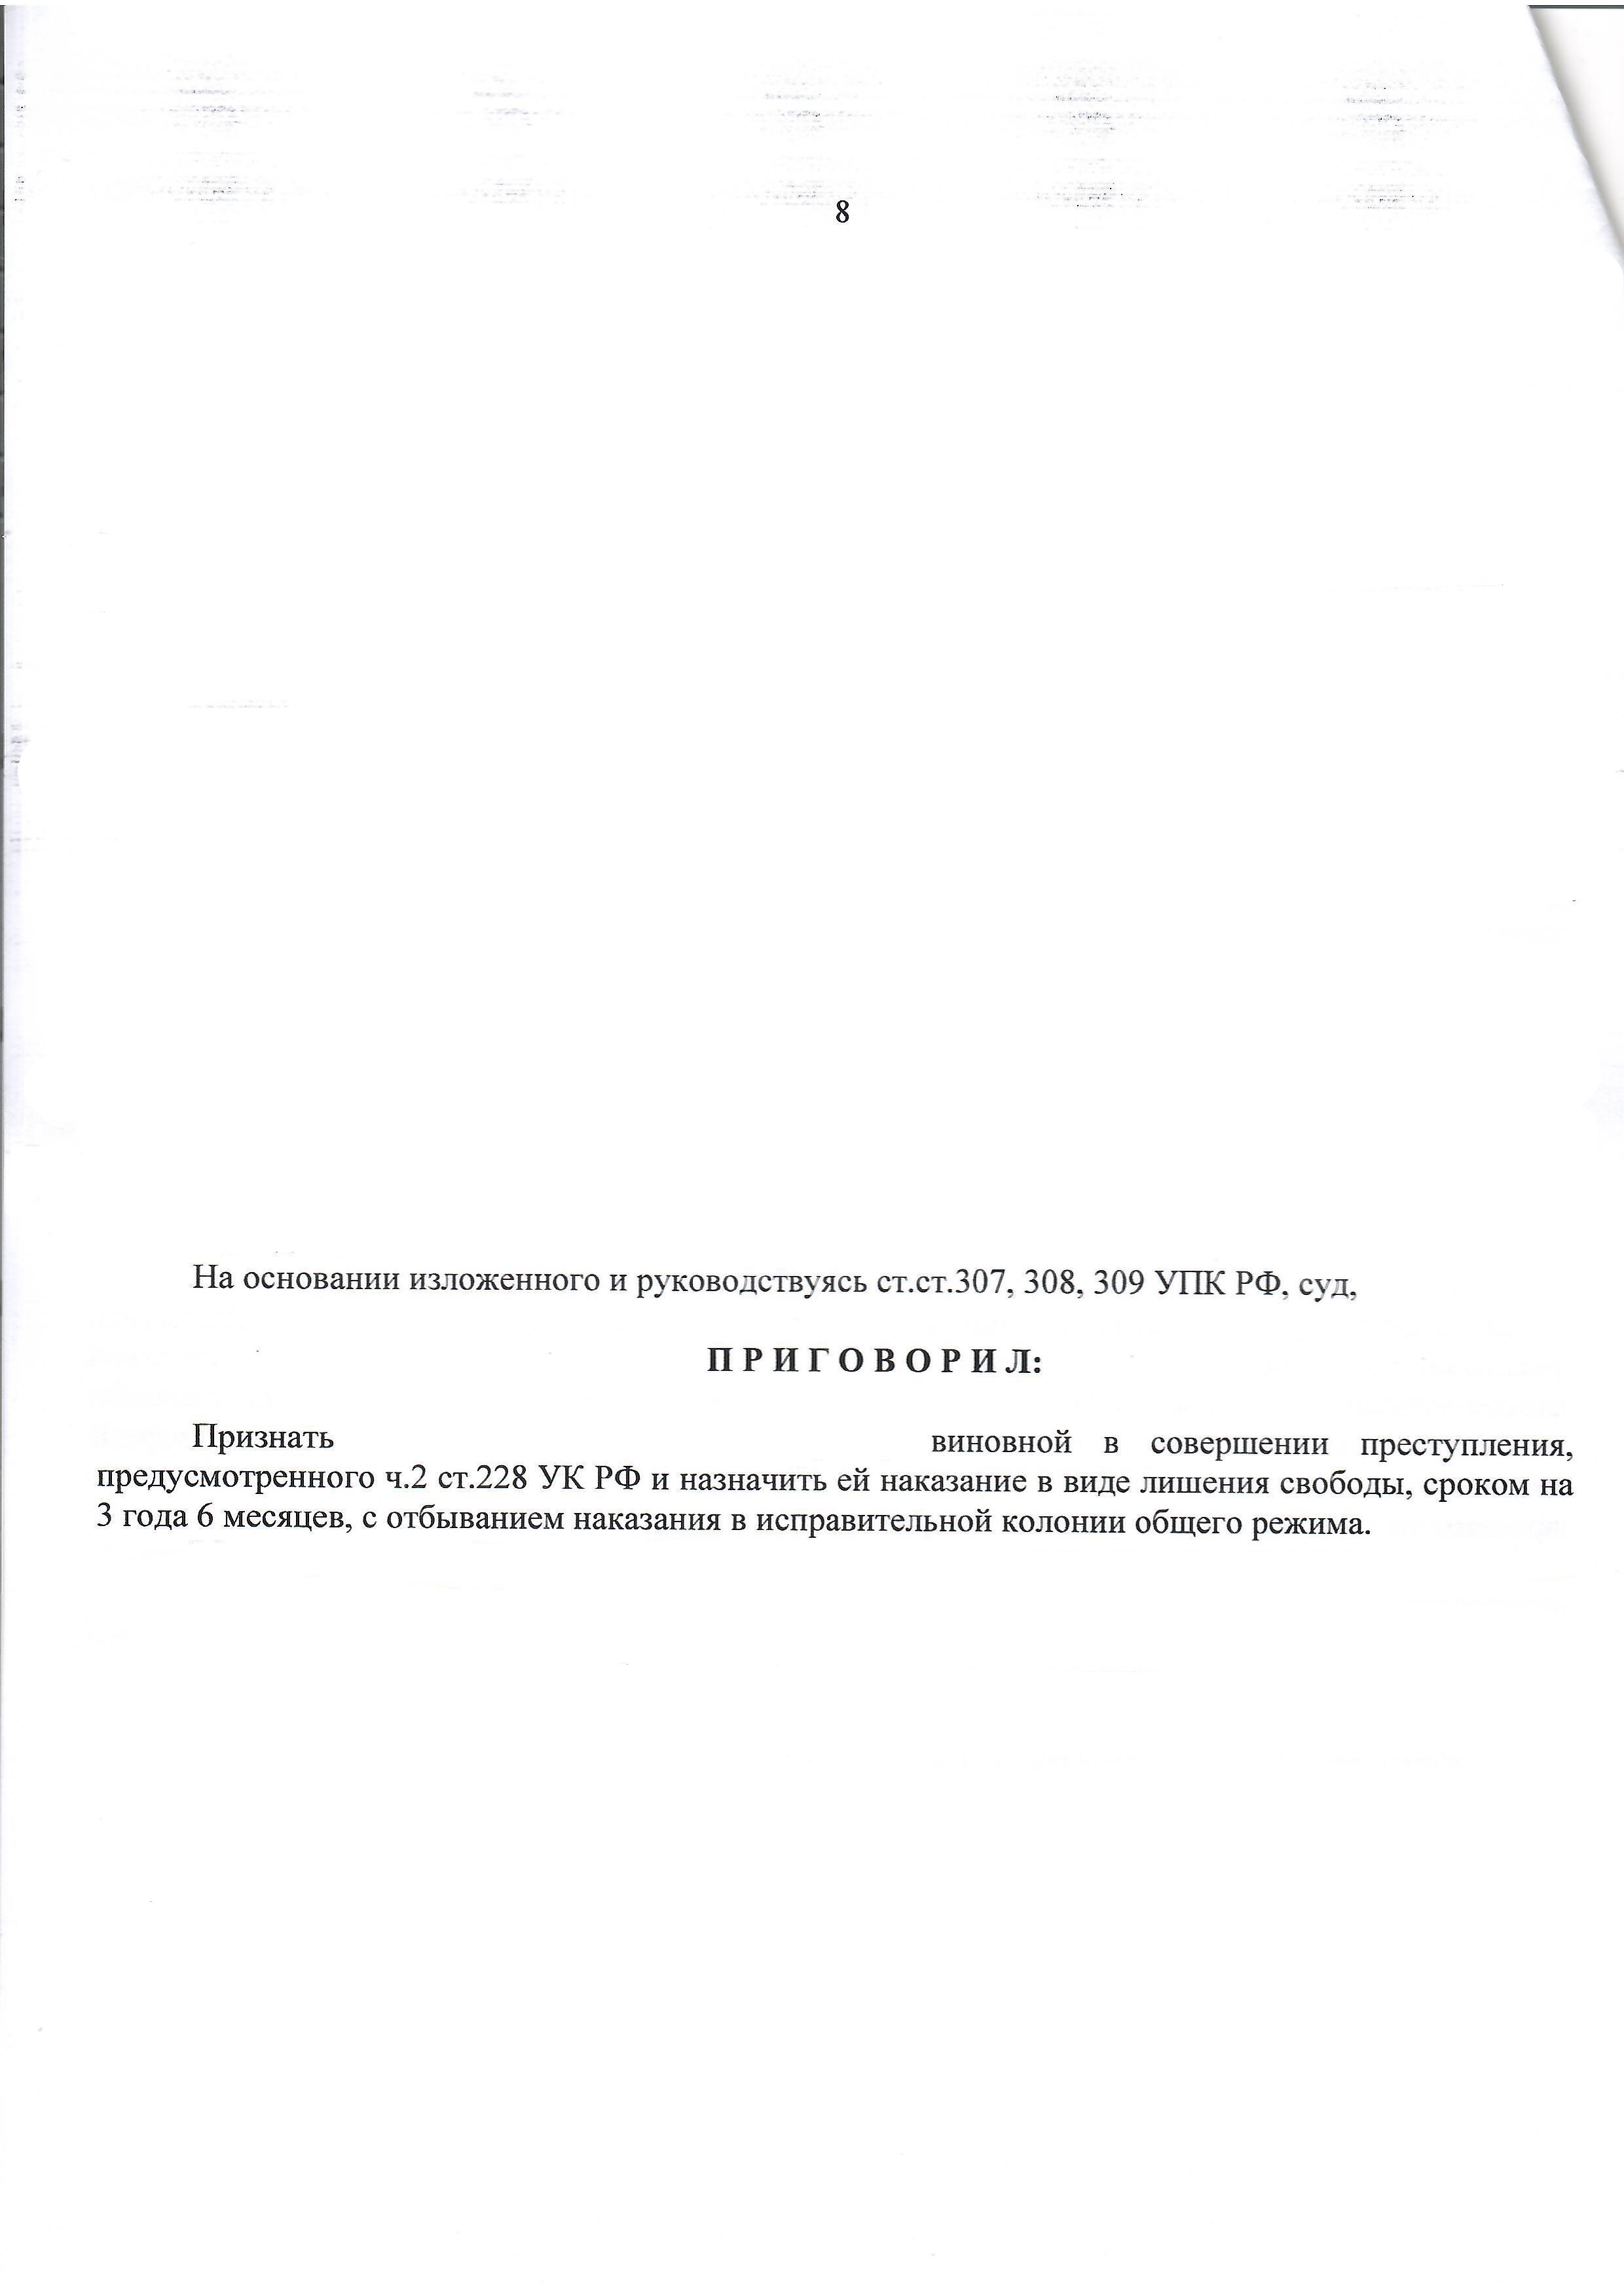 Переквалификация со сбыта на хранение - с ч. 4 ст. 228.1 на ч. 2 ст. 228 УК РФ